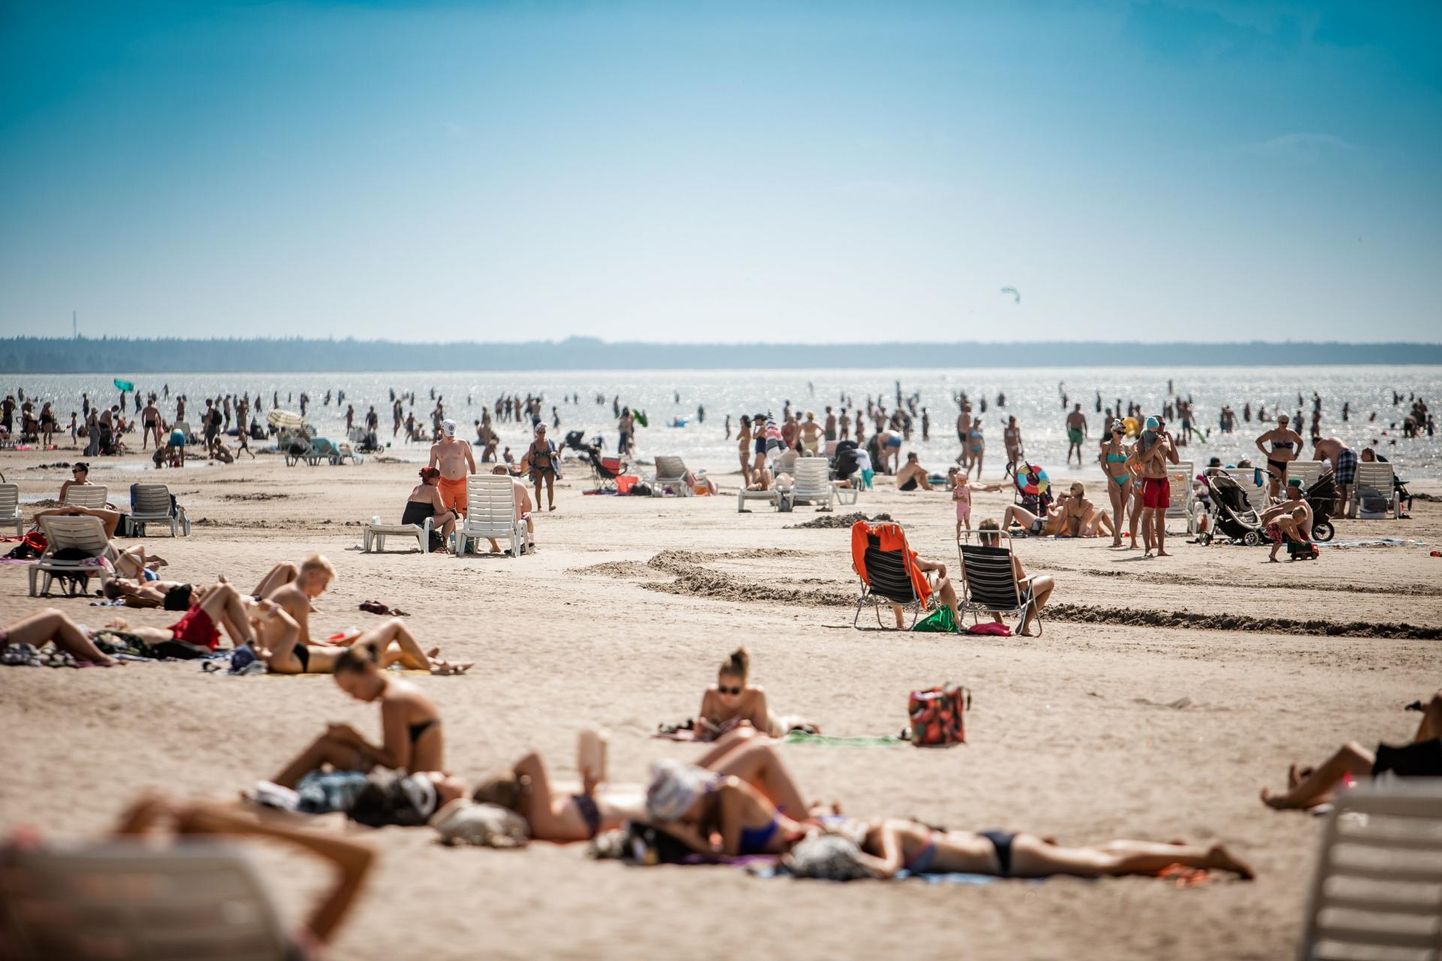 Inimestel ei ole randa tulles kaasa võetud asju tihti kuskile panna ja seetõttu pöördutakse rannavalve poole palvega kraami valvata. Augustis peaks plaažile paigaldatama aga hoiukapid.